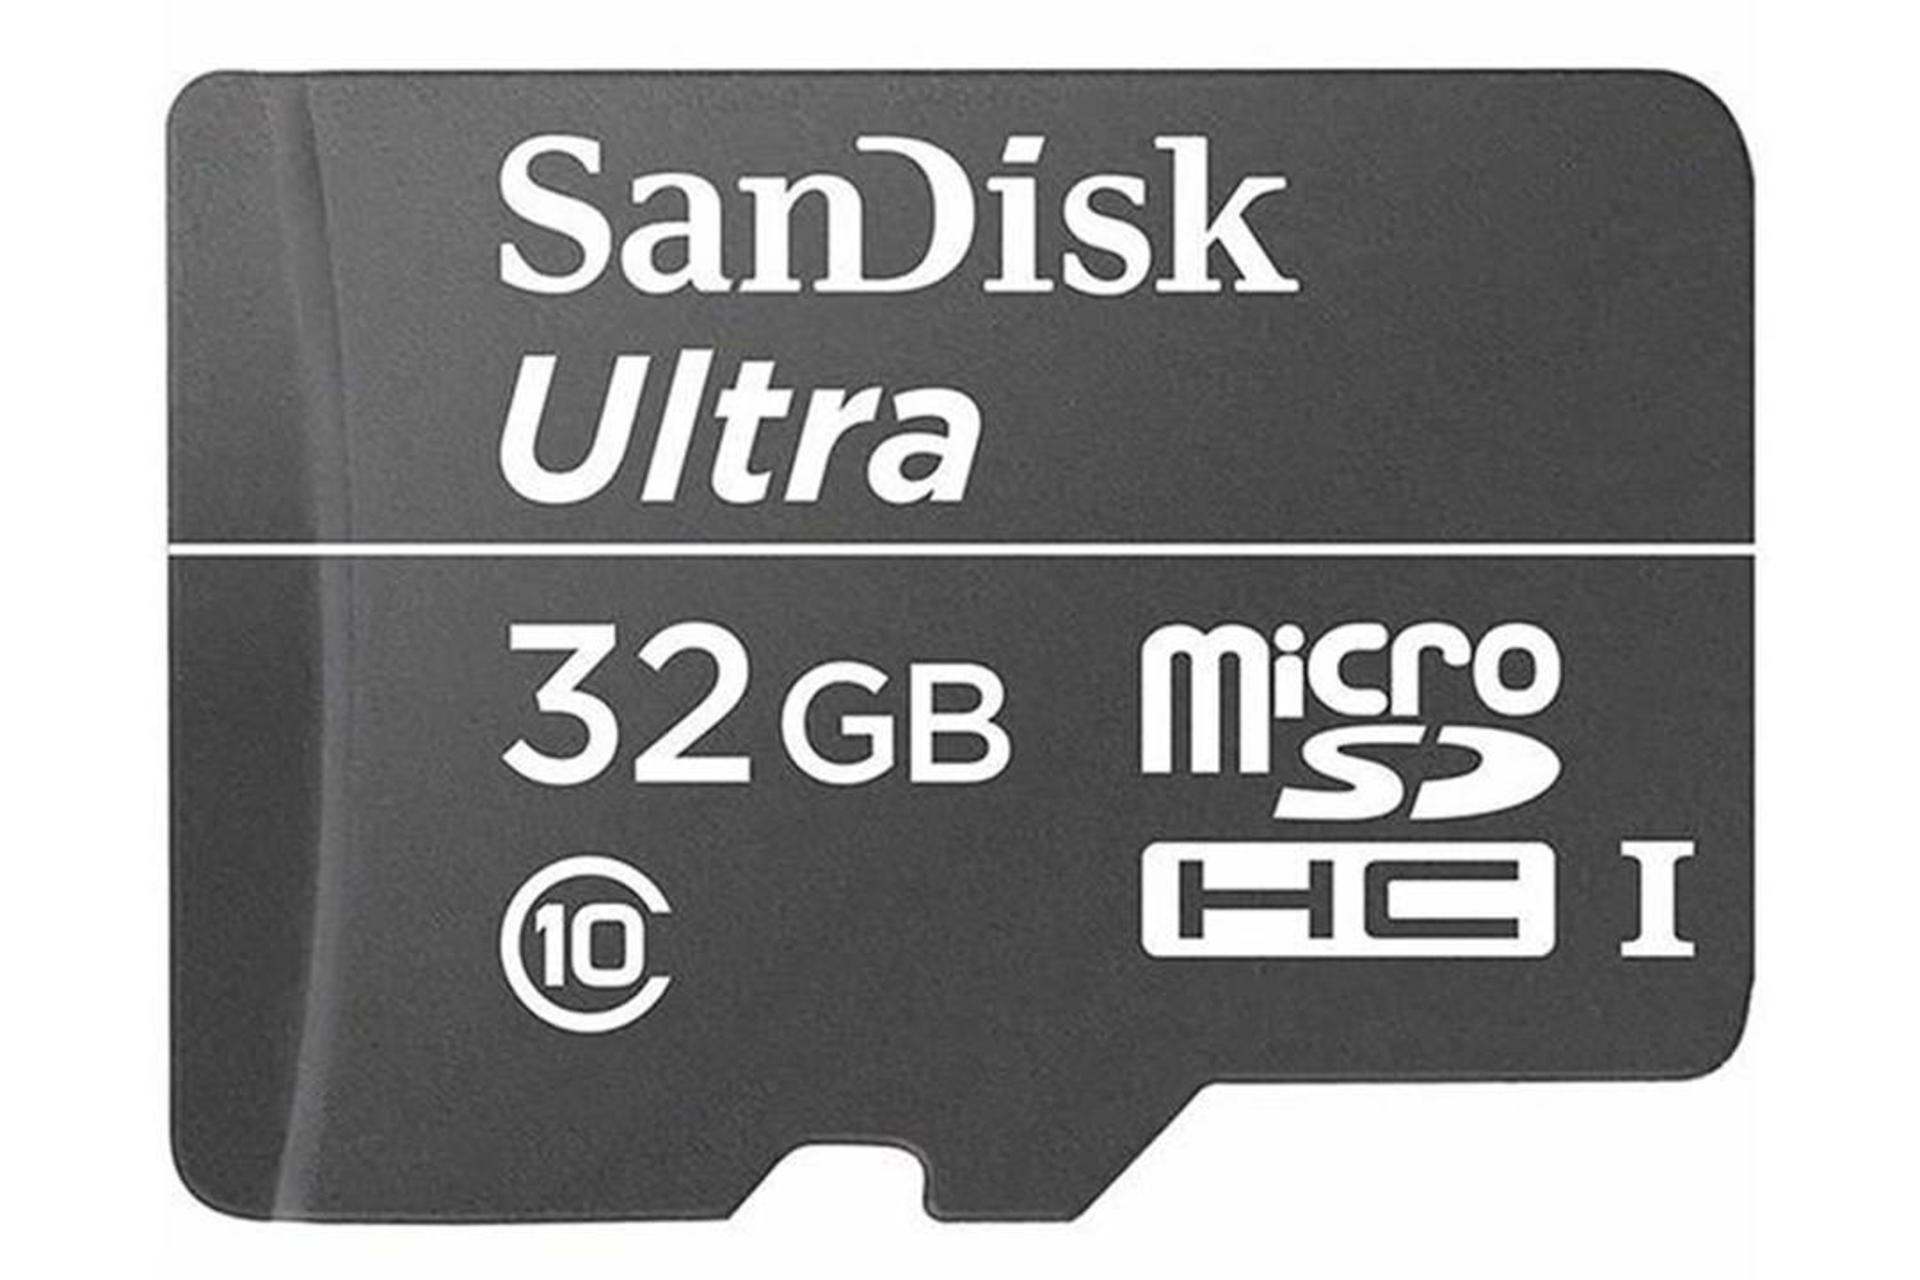 مرجع متخصصين ايران SanDisk Ultra microSDHC Class 10 UHS-I U1 32GB